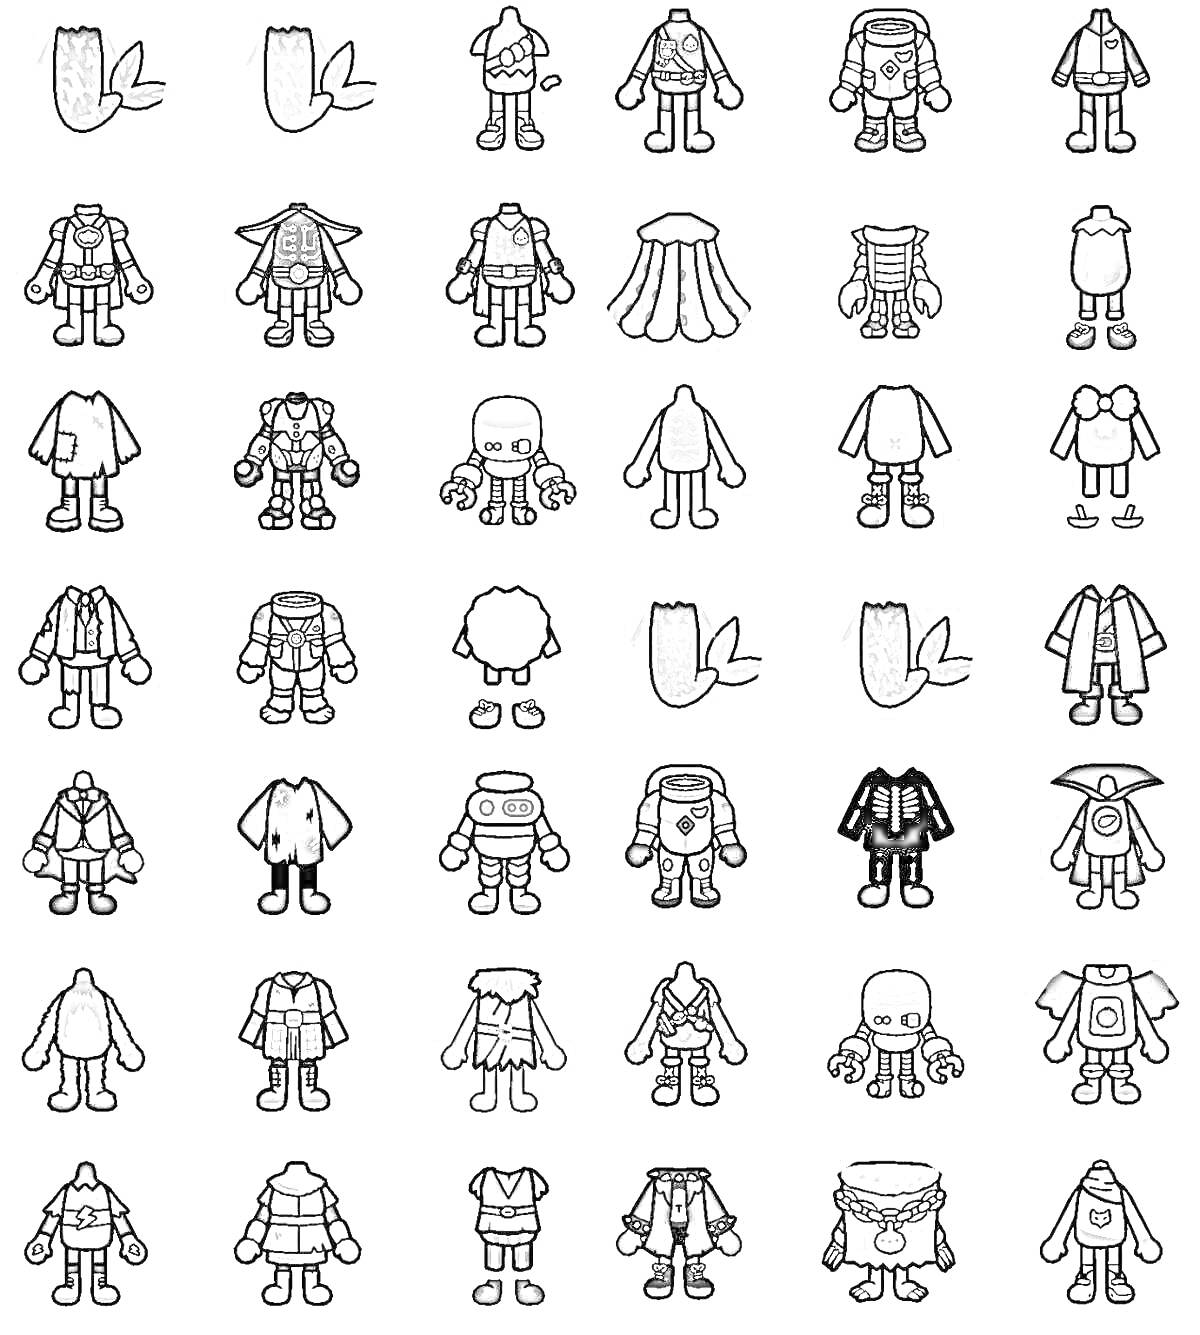 Раскраска Раскраска Тока Бока - Одежда и аксессуары. Включает свитеры, куртки, плащи, костюмы, юбки, комбинезоны, меховые шапки, очки и аксессуары для волос.